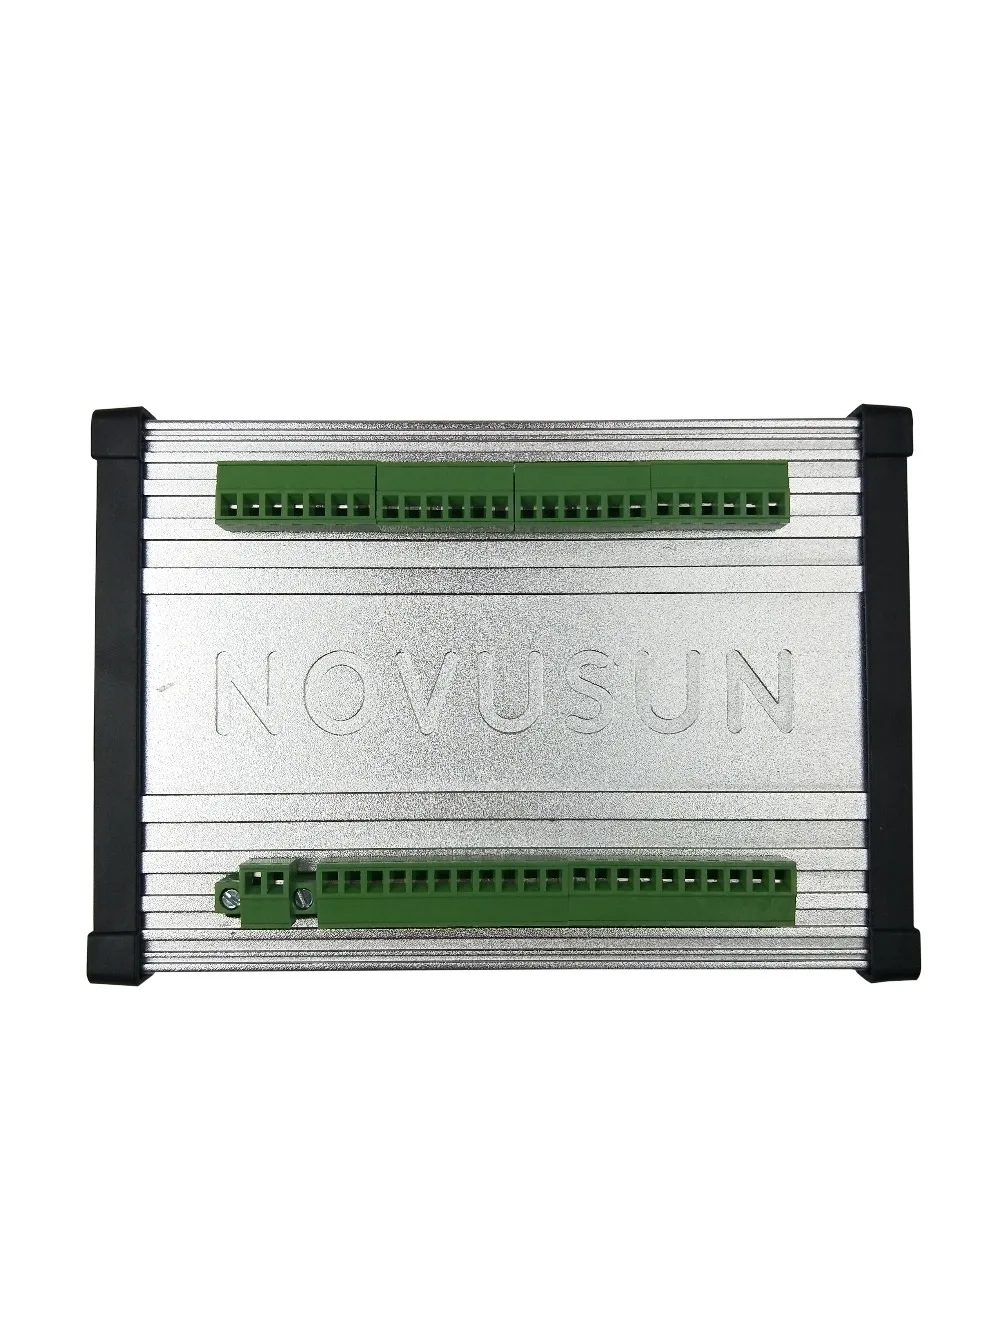 CNC MACH3 Ethernet порт трехосевой карты управления используется для гравировального Станка алюминиевый корпус регулятор скорости dc ШИМ